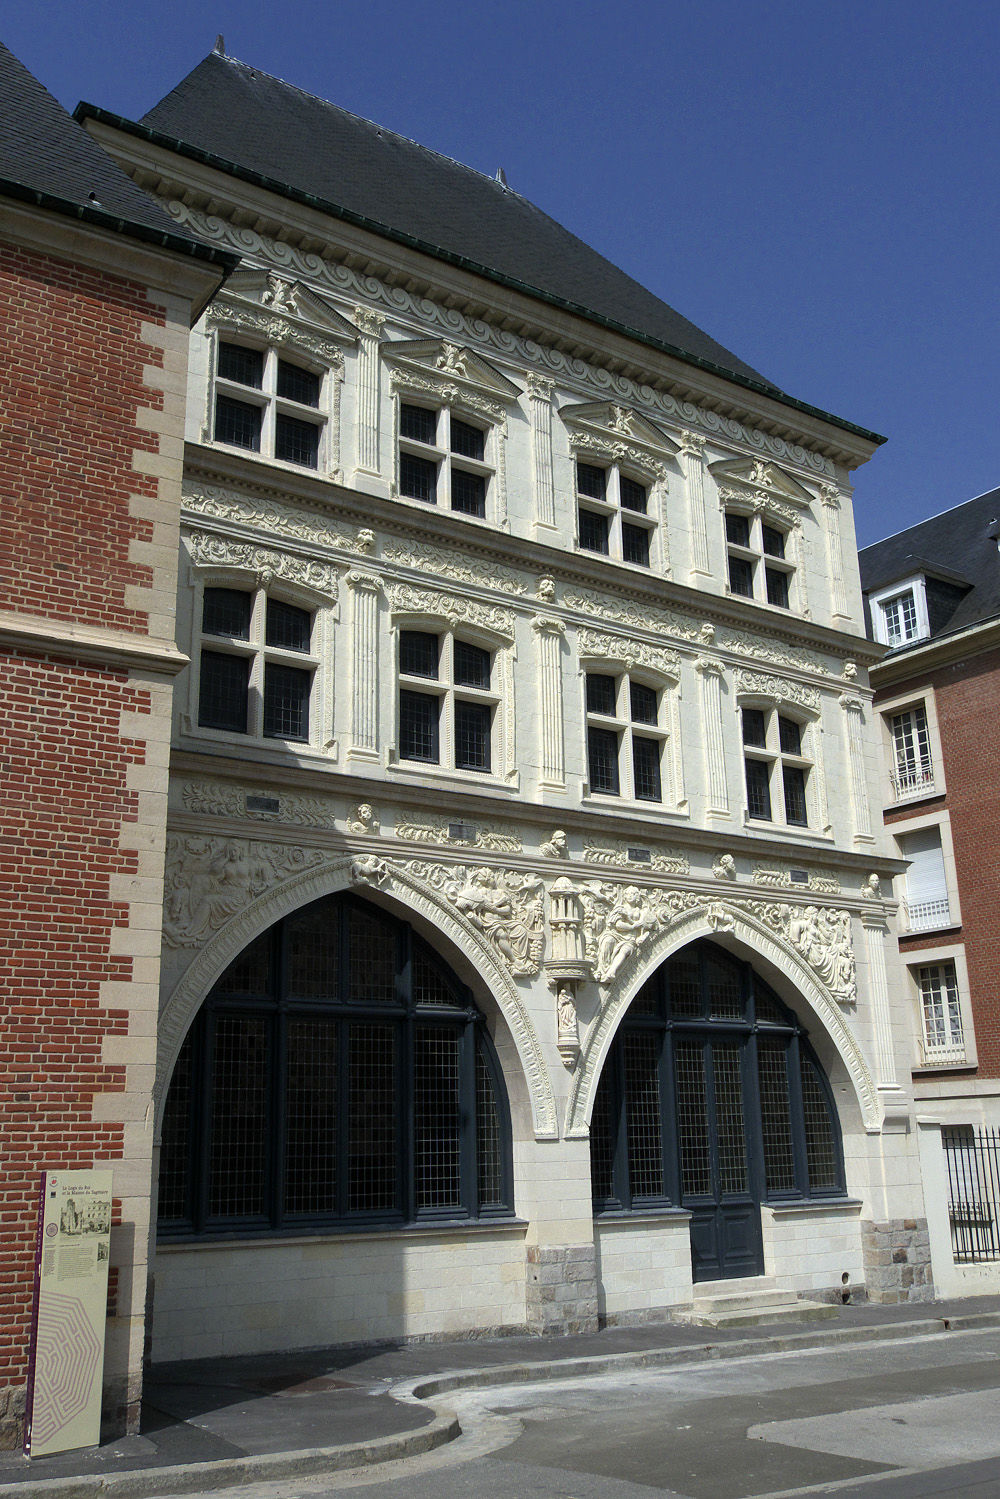 Maison du Sagittaire, square J. Bocquet, Amiens